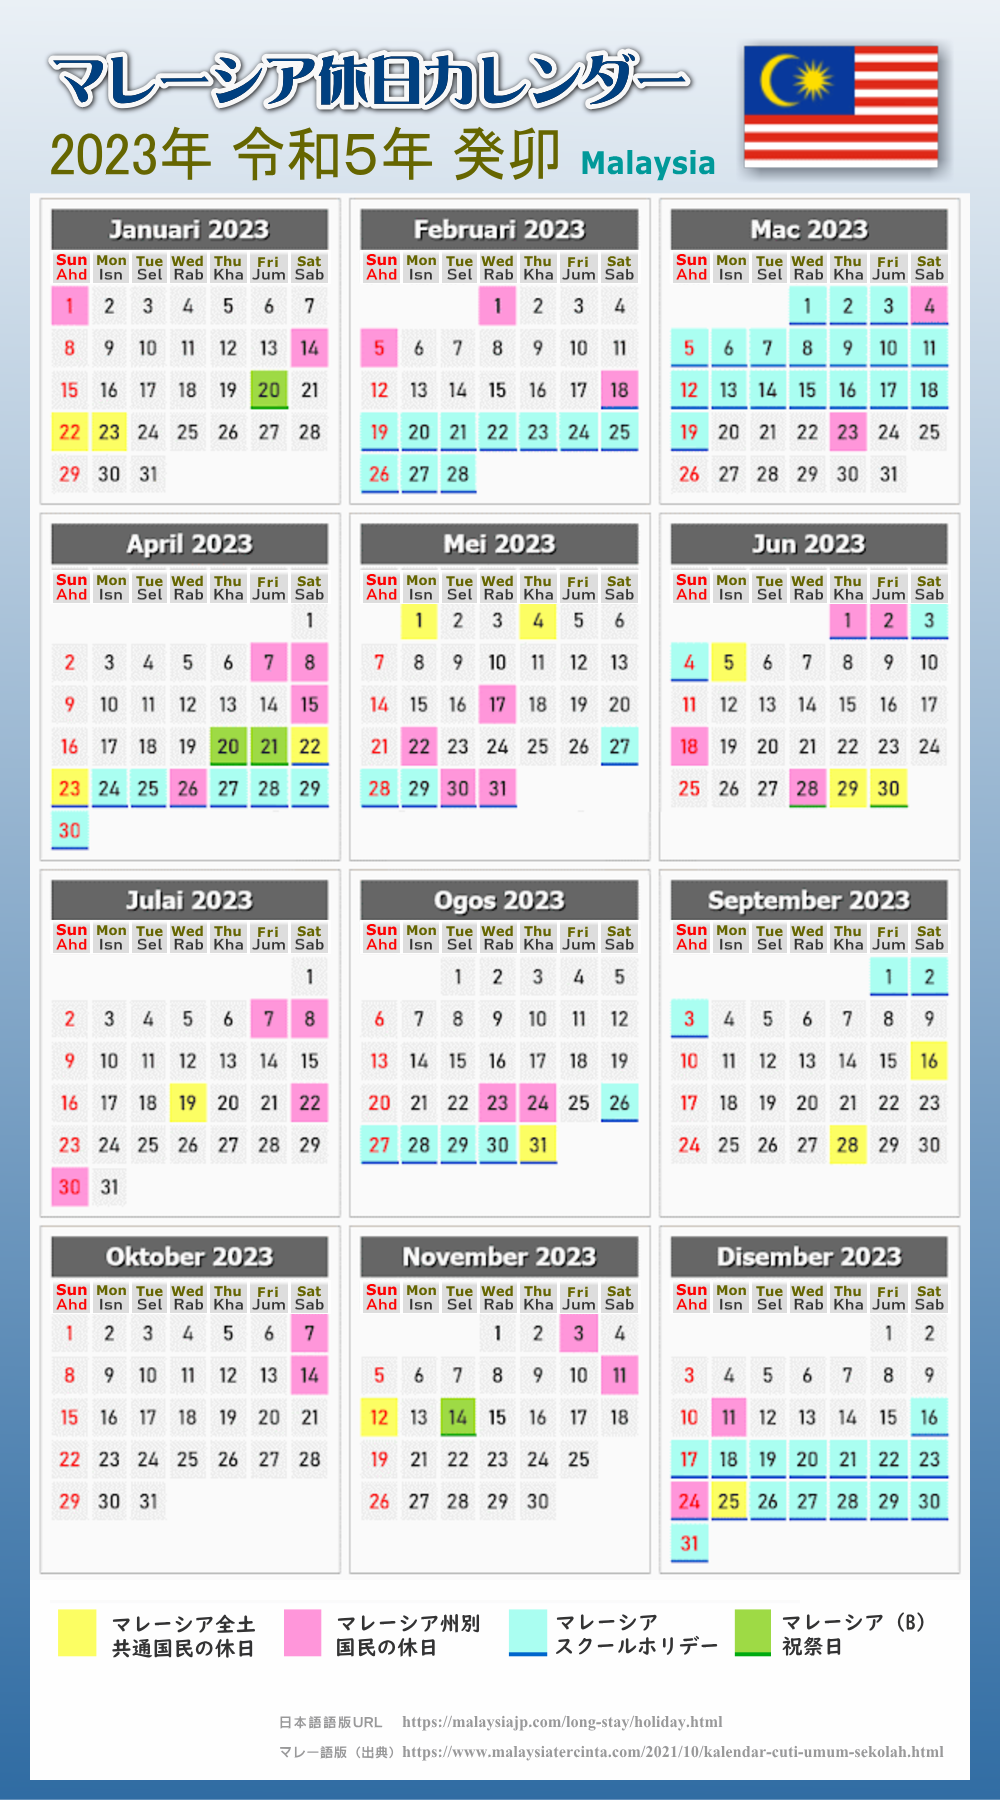 マレーシアの休日カレンダー 2023年版